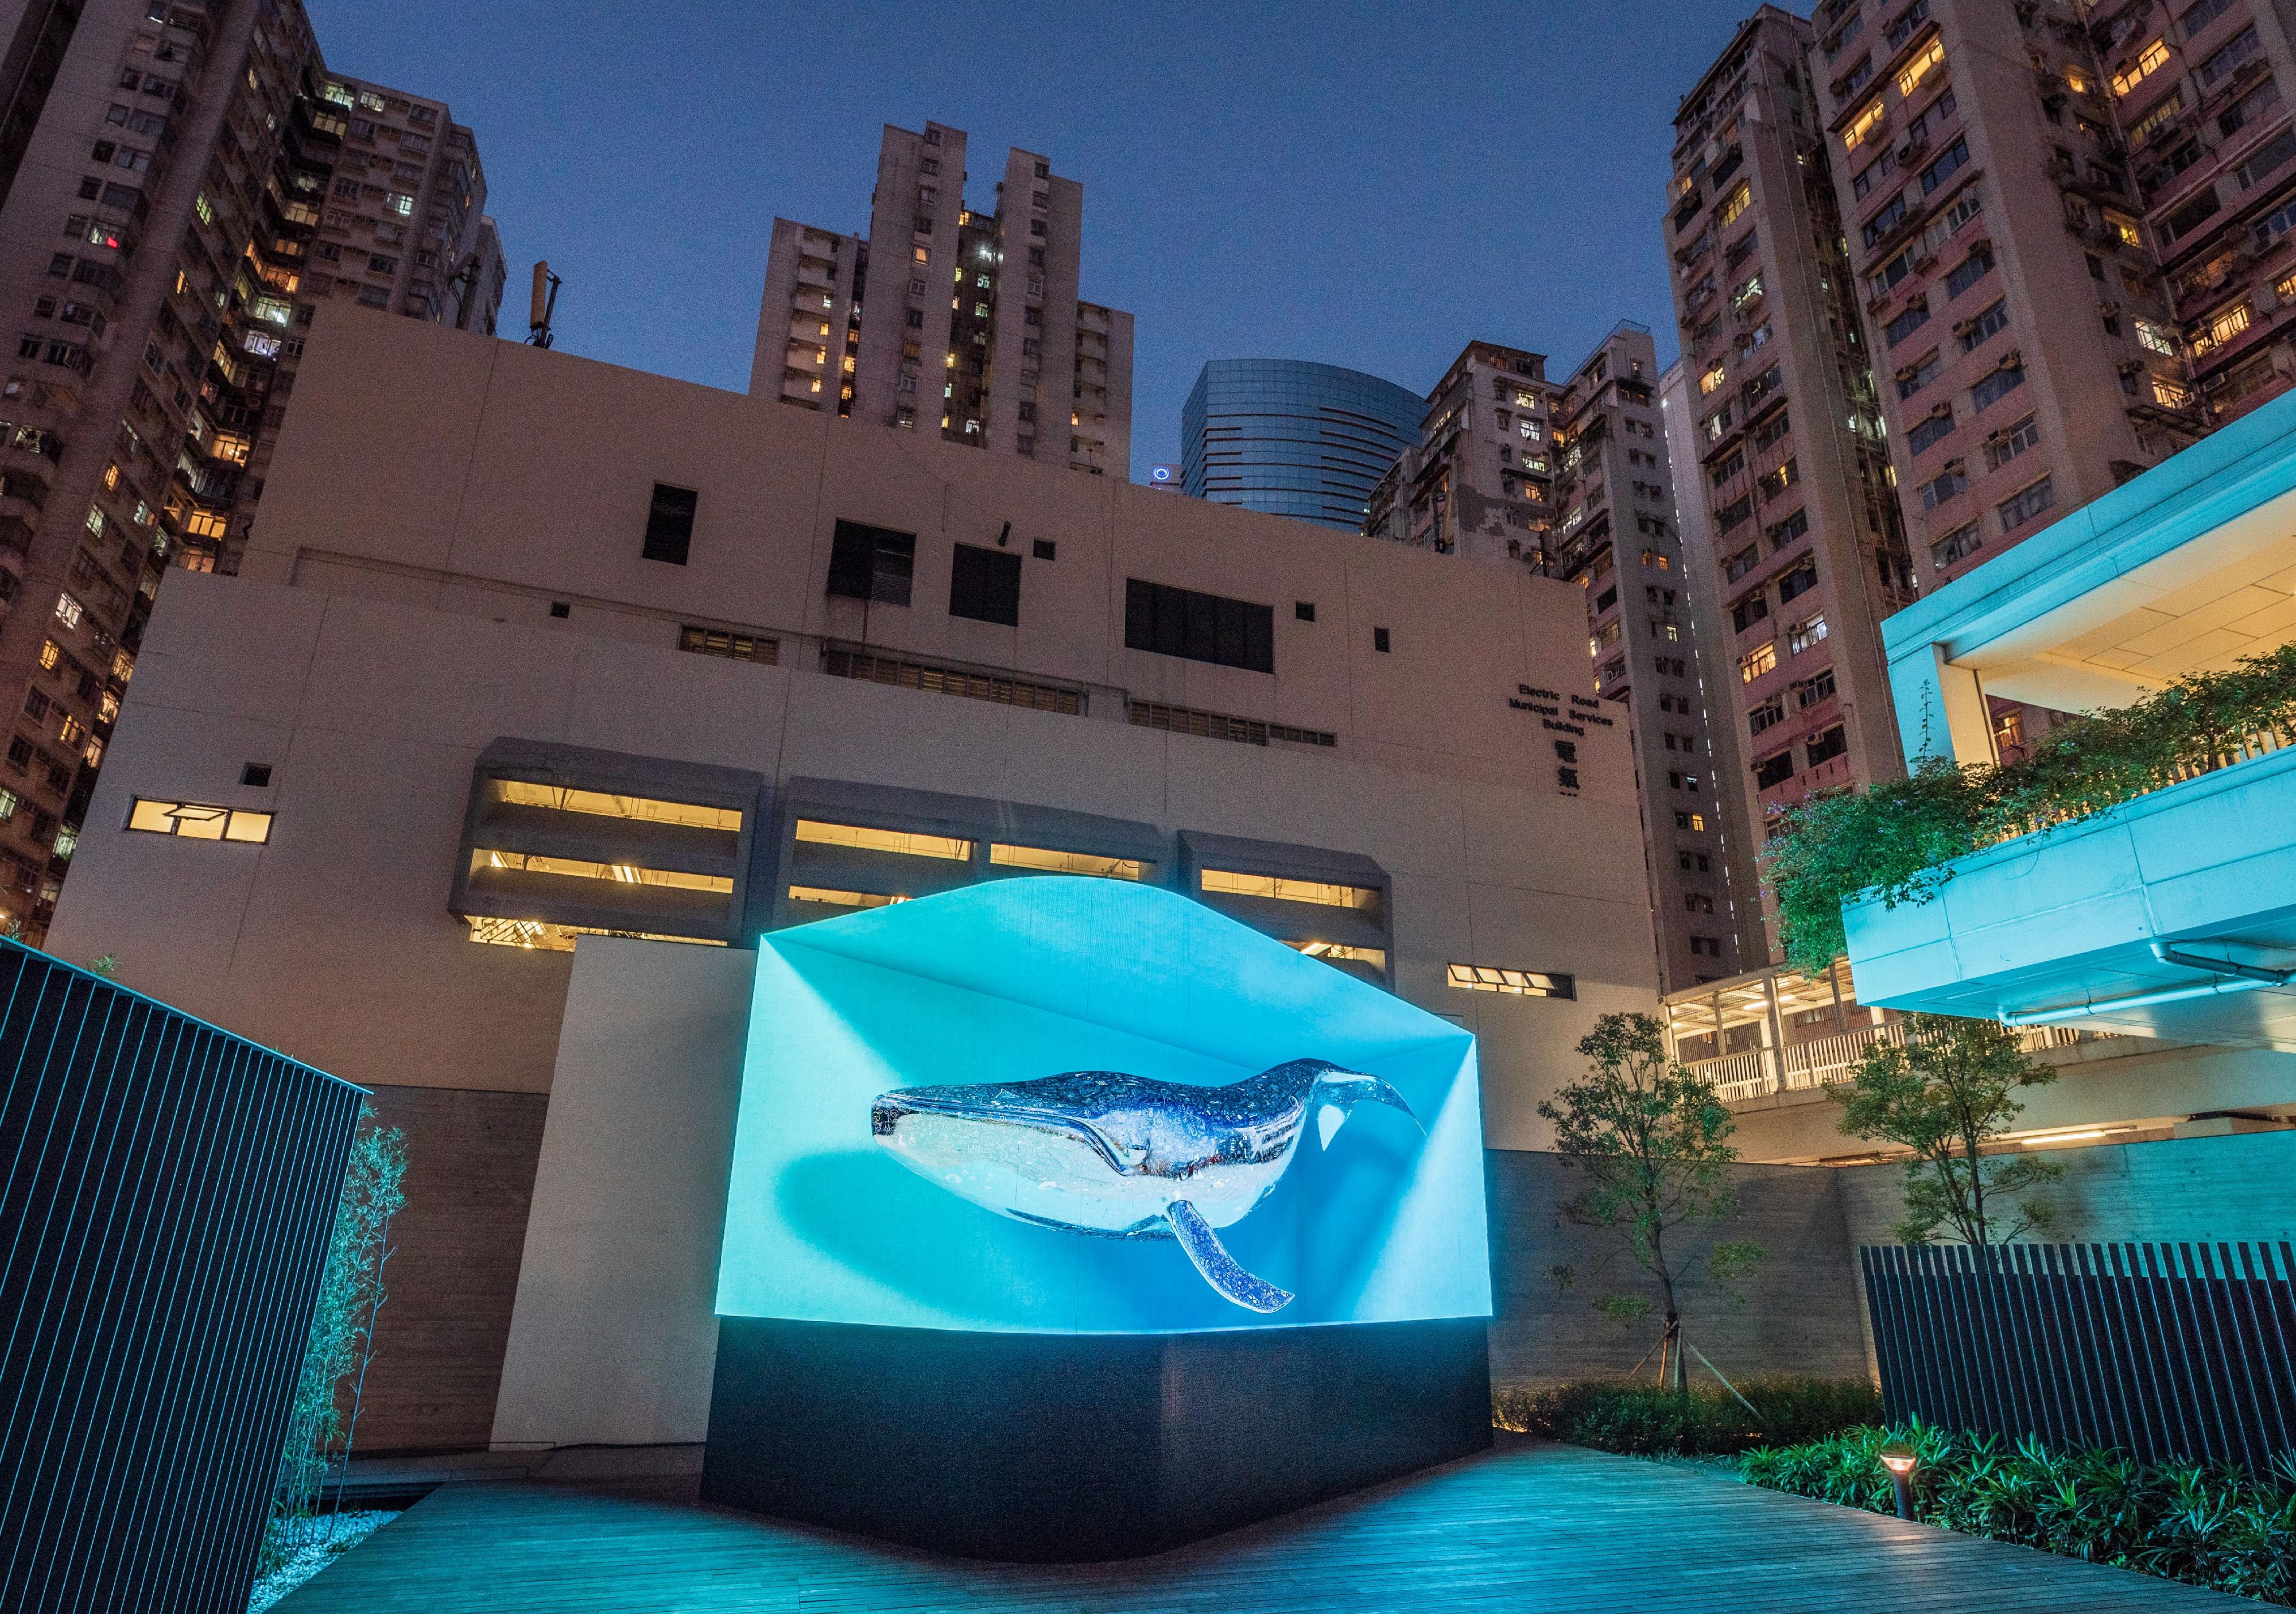 油街實現的全新藝術空間明日（五月二十四日）起向公眾開放。圖示於「新域混影」展覽中展出，韓國藝術團隊d'strict的立體數碼藝術作品《鯨魚》，為觀眾帶來沉浸式的大自然景觀。